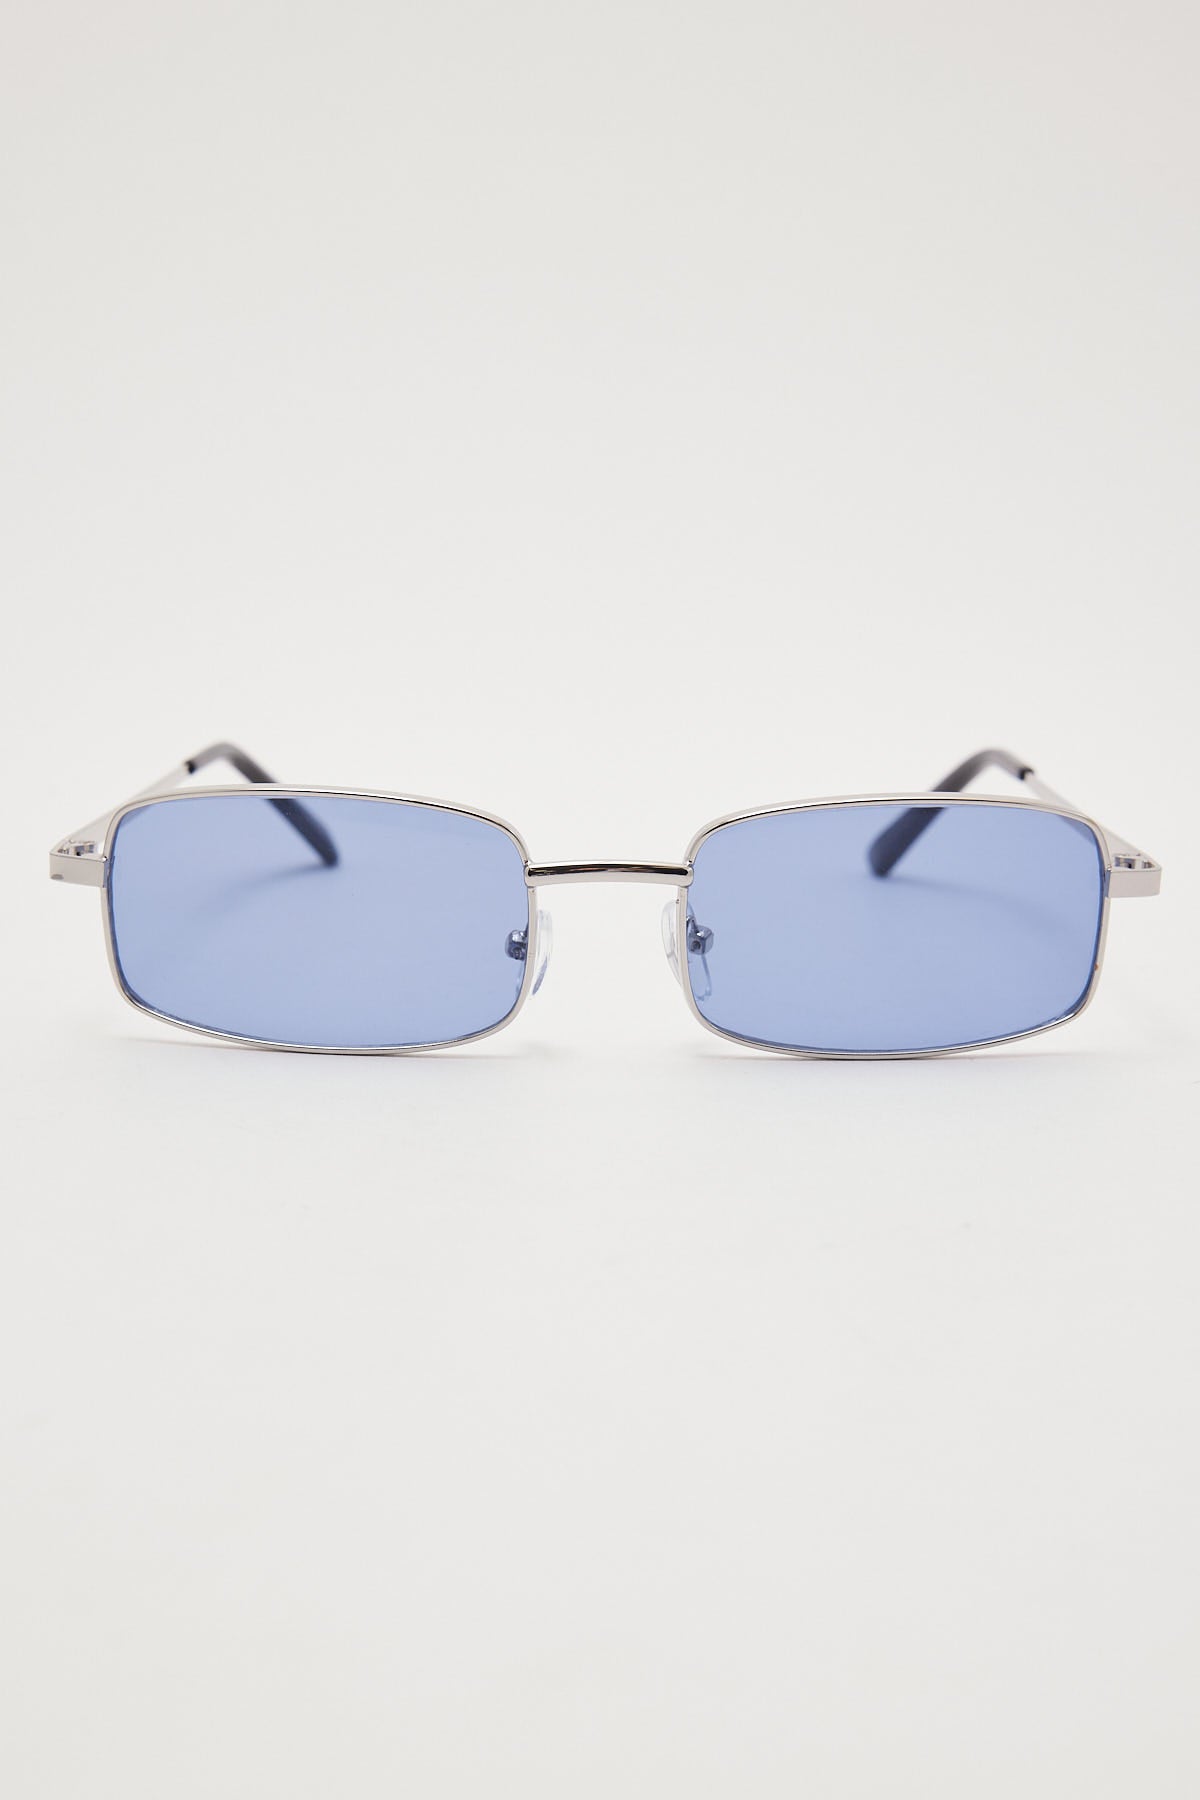 Unity Eyewear Matrix Silver/Blue – Universal Store